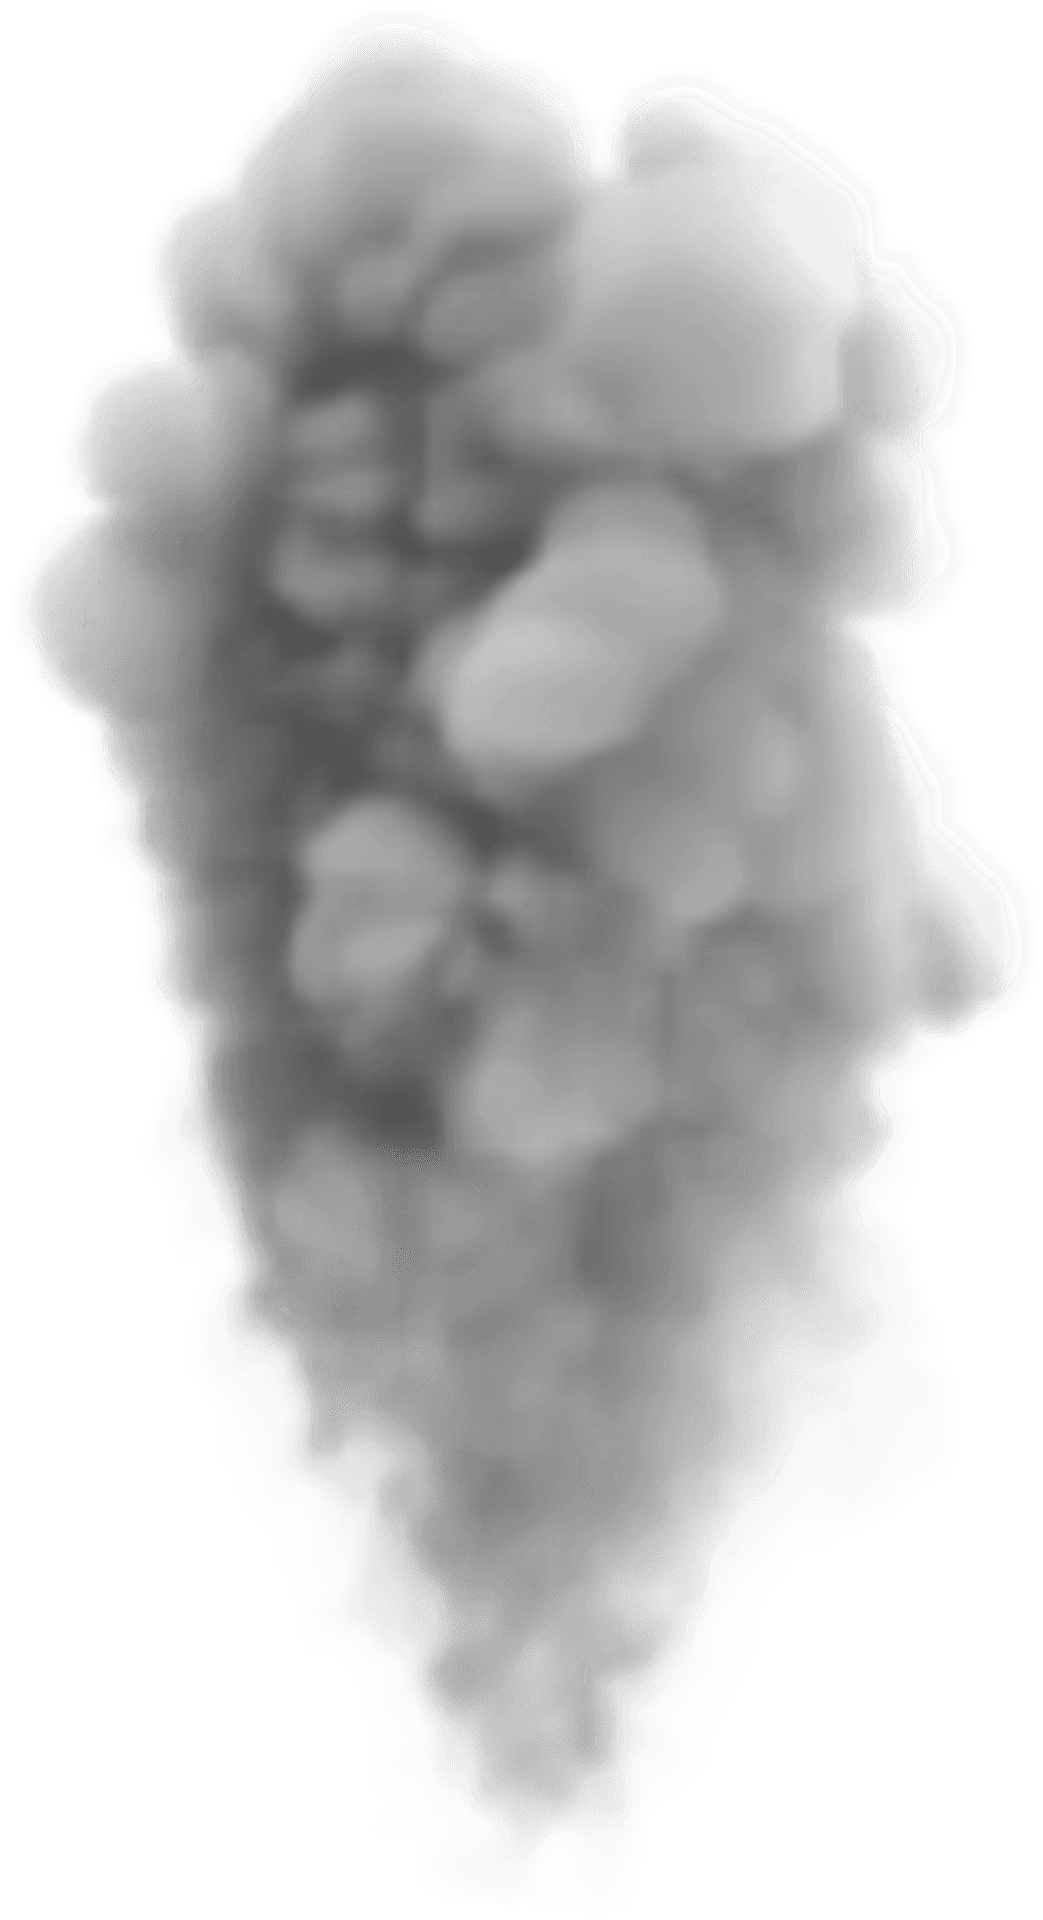 Smoke Plume Graphic PNG image